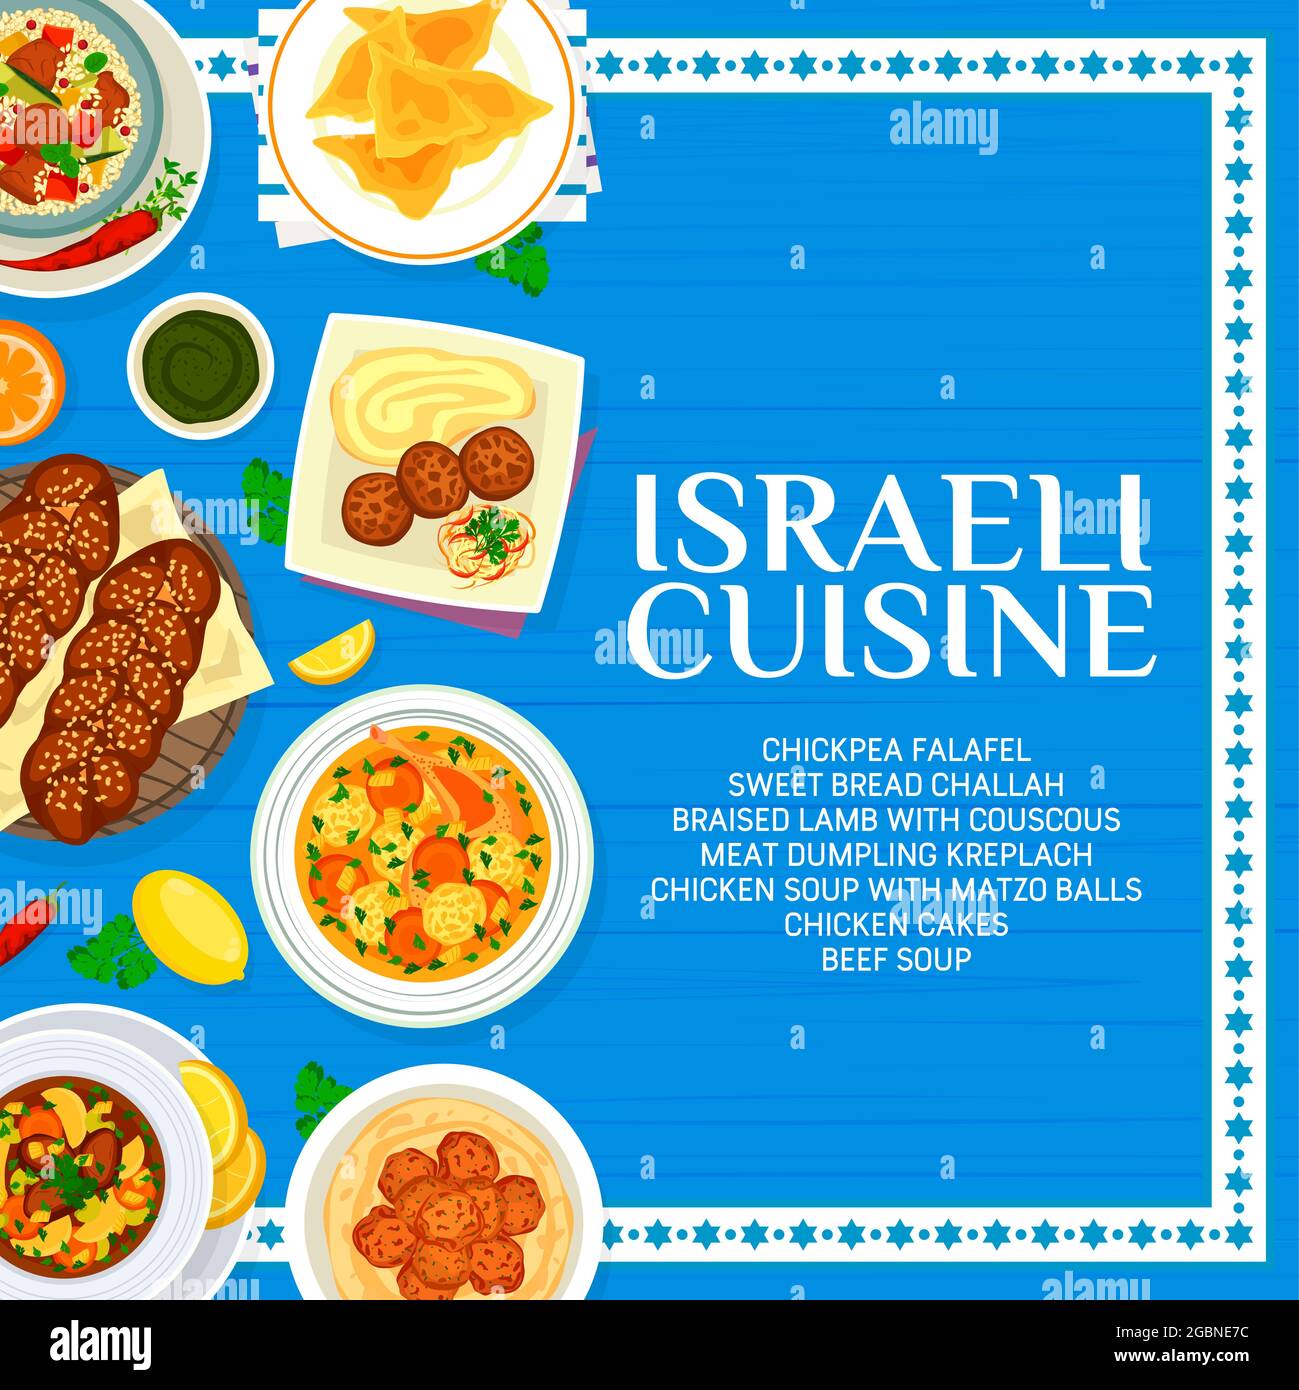 Le menu de cuisine israélienne comprend des plats vectoriels de viande et de légumes juifs. Falafels aux pois chiches, couscous d'agneau et soupe au mazzo-ball, cha au pain doux Illustration de Vecteur